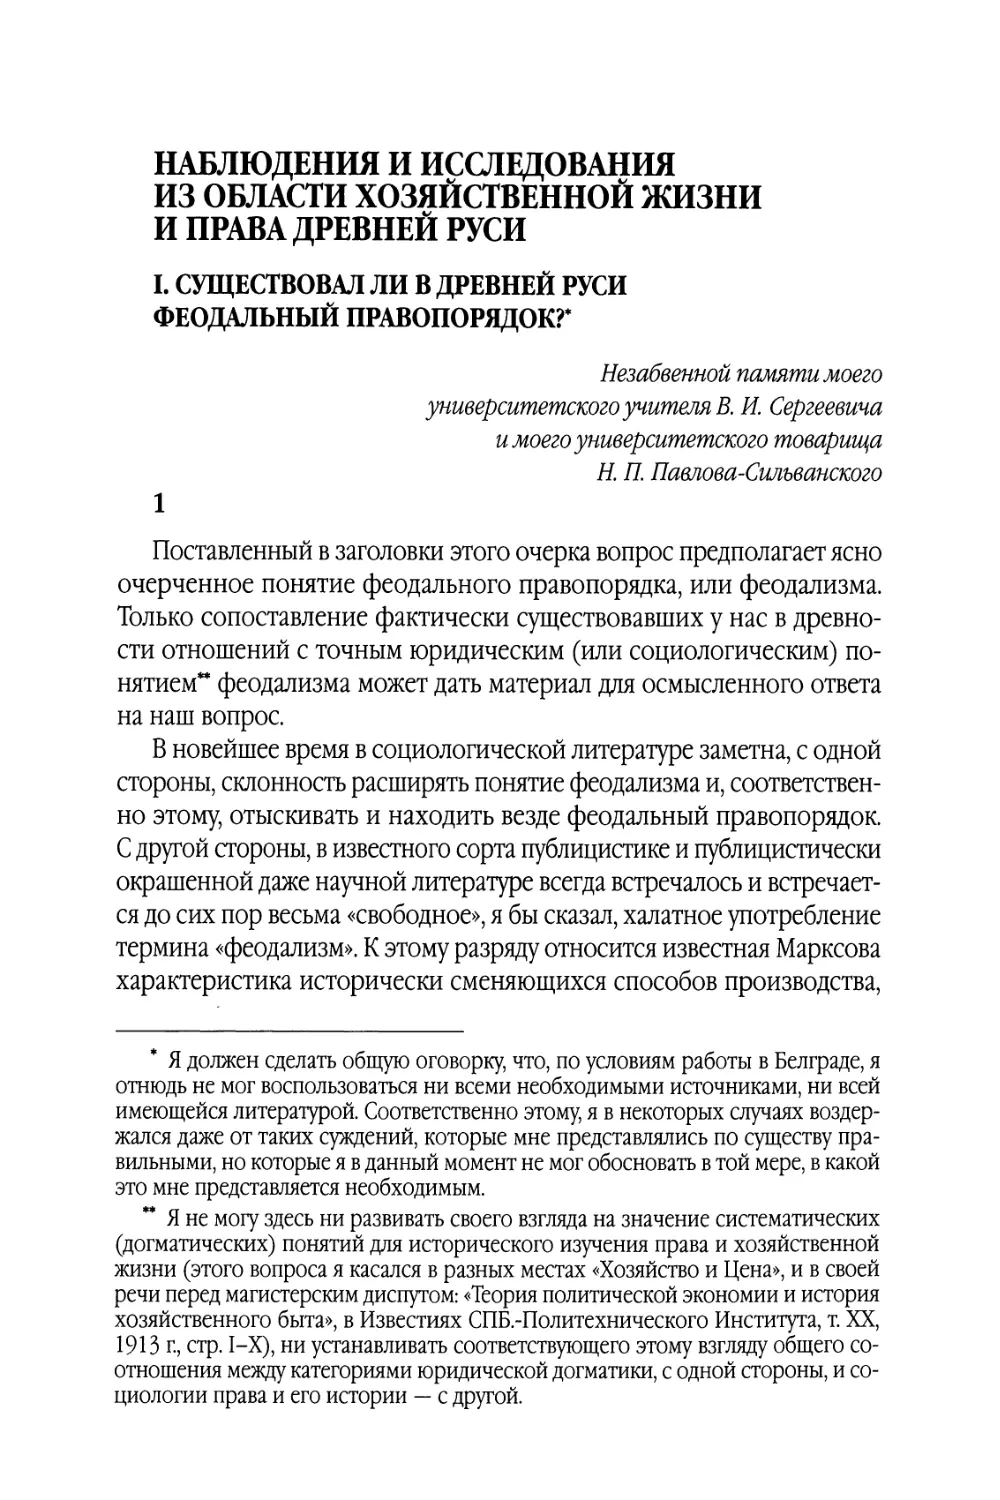 Наблюдения и исследования из области хозяйственной жизни и права Древней Руси